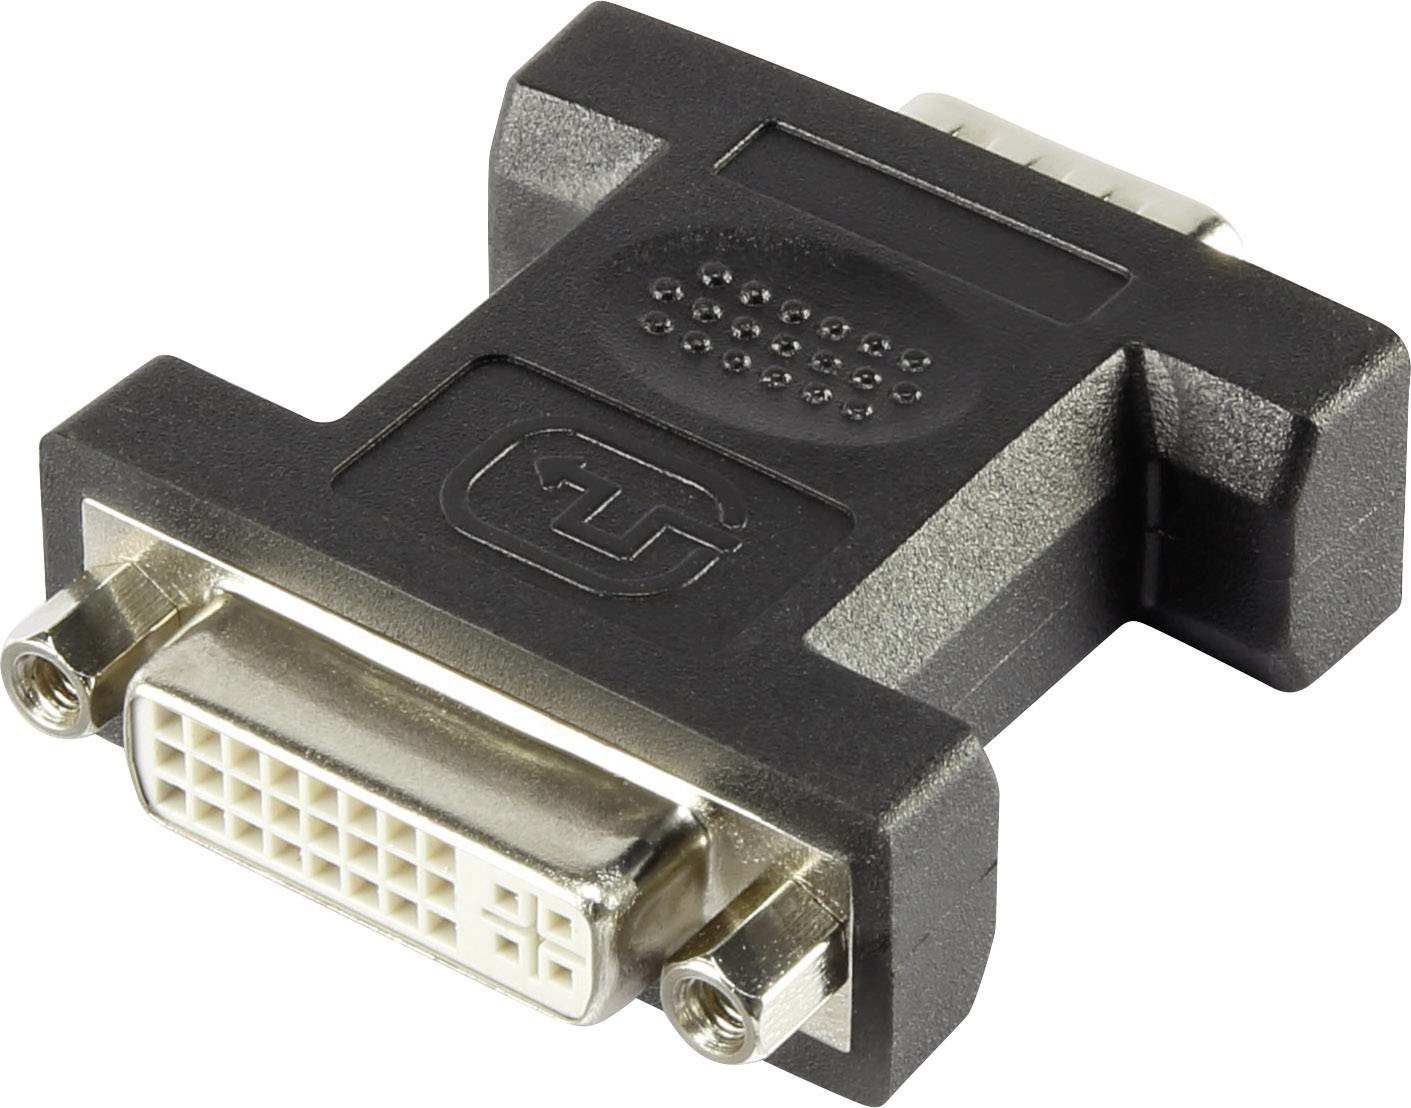 DVI / VGA adaptér Renkforce [1x DVI zásuvka 24 plus 5pólová - 1x VGA zástrčka], bílá, lze šroubovat